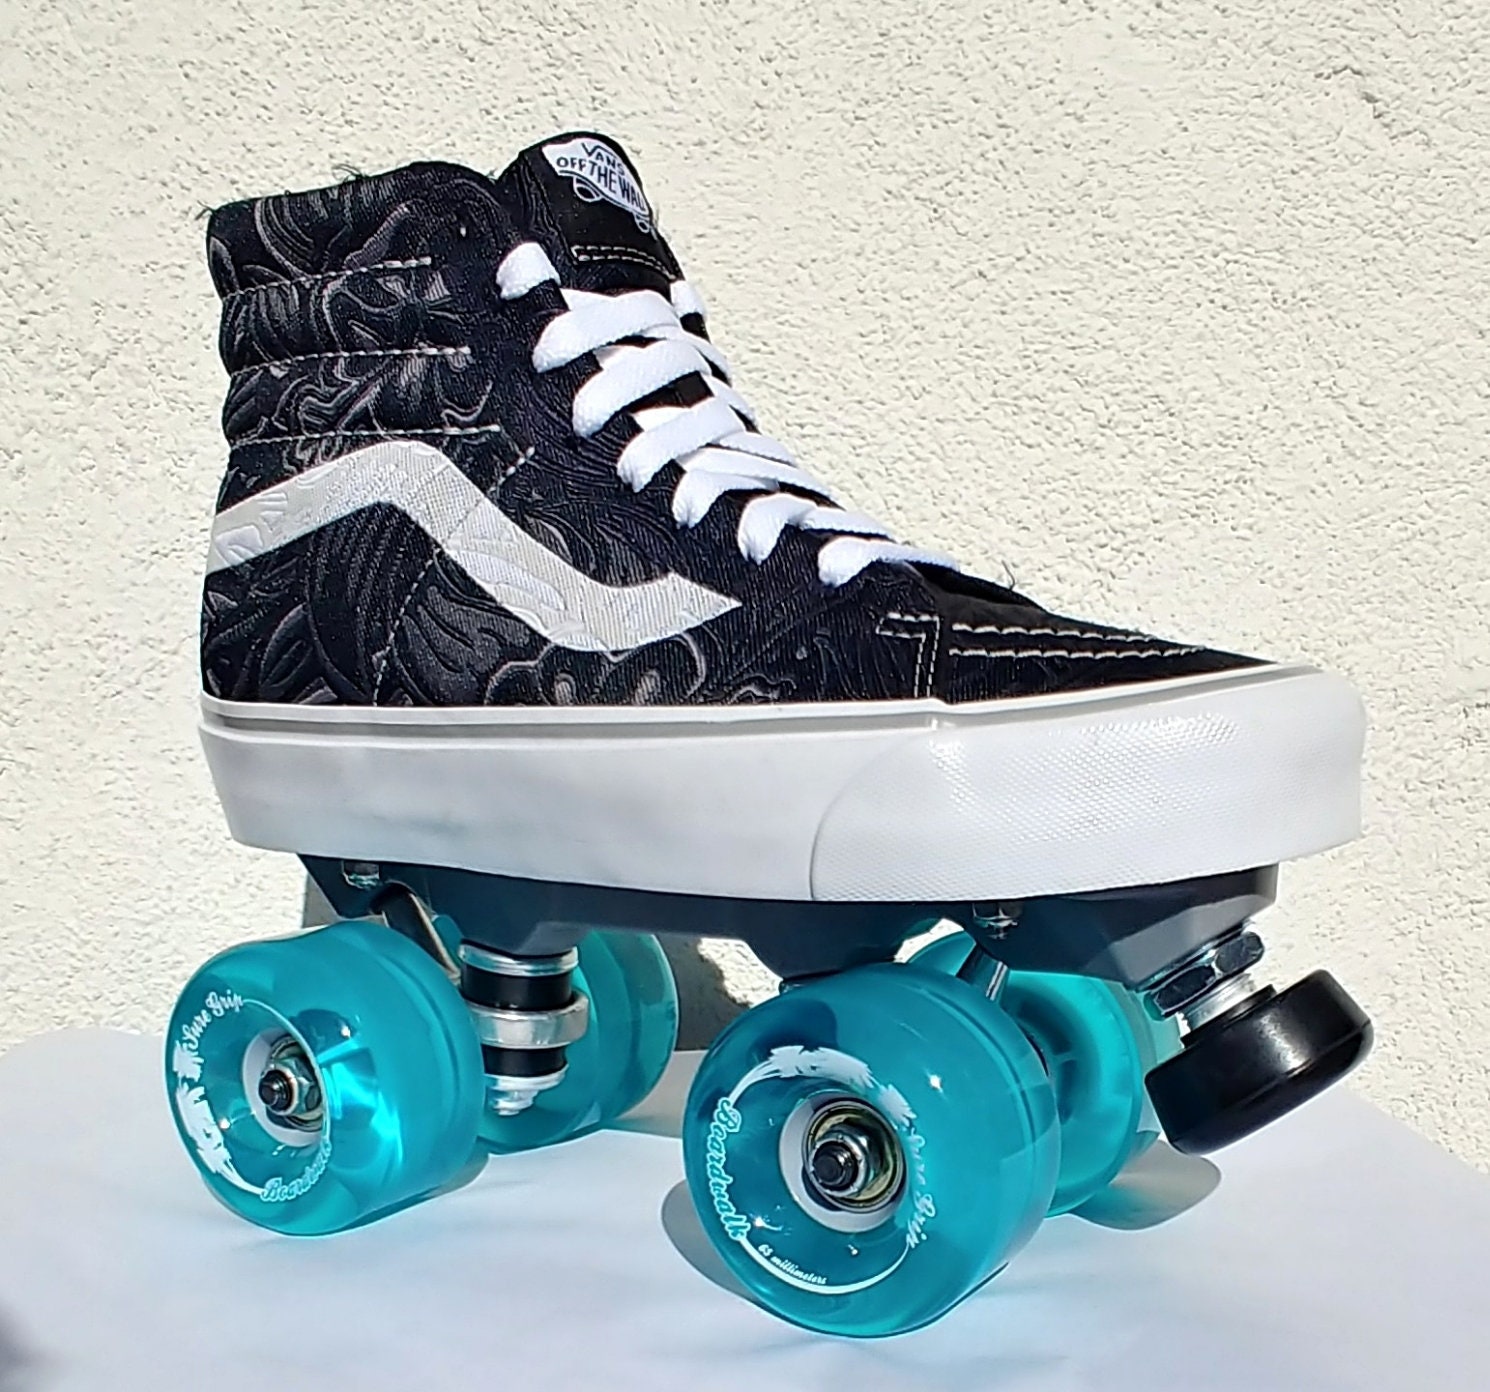 Custom Vans Avanti Magnesium Roller Skates (Lizzie Vans Not